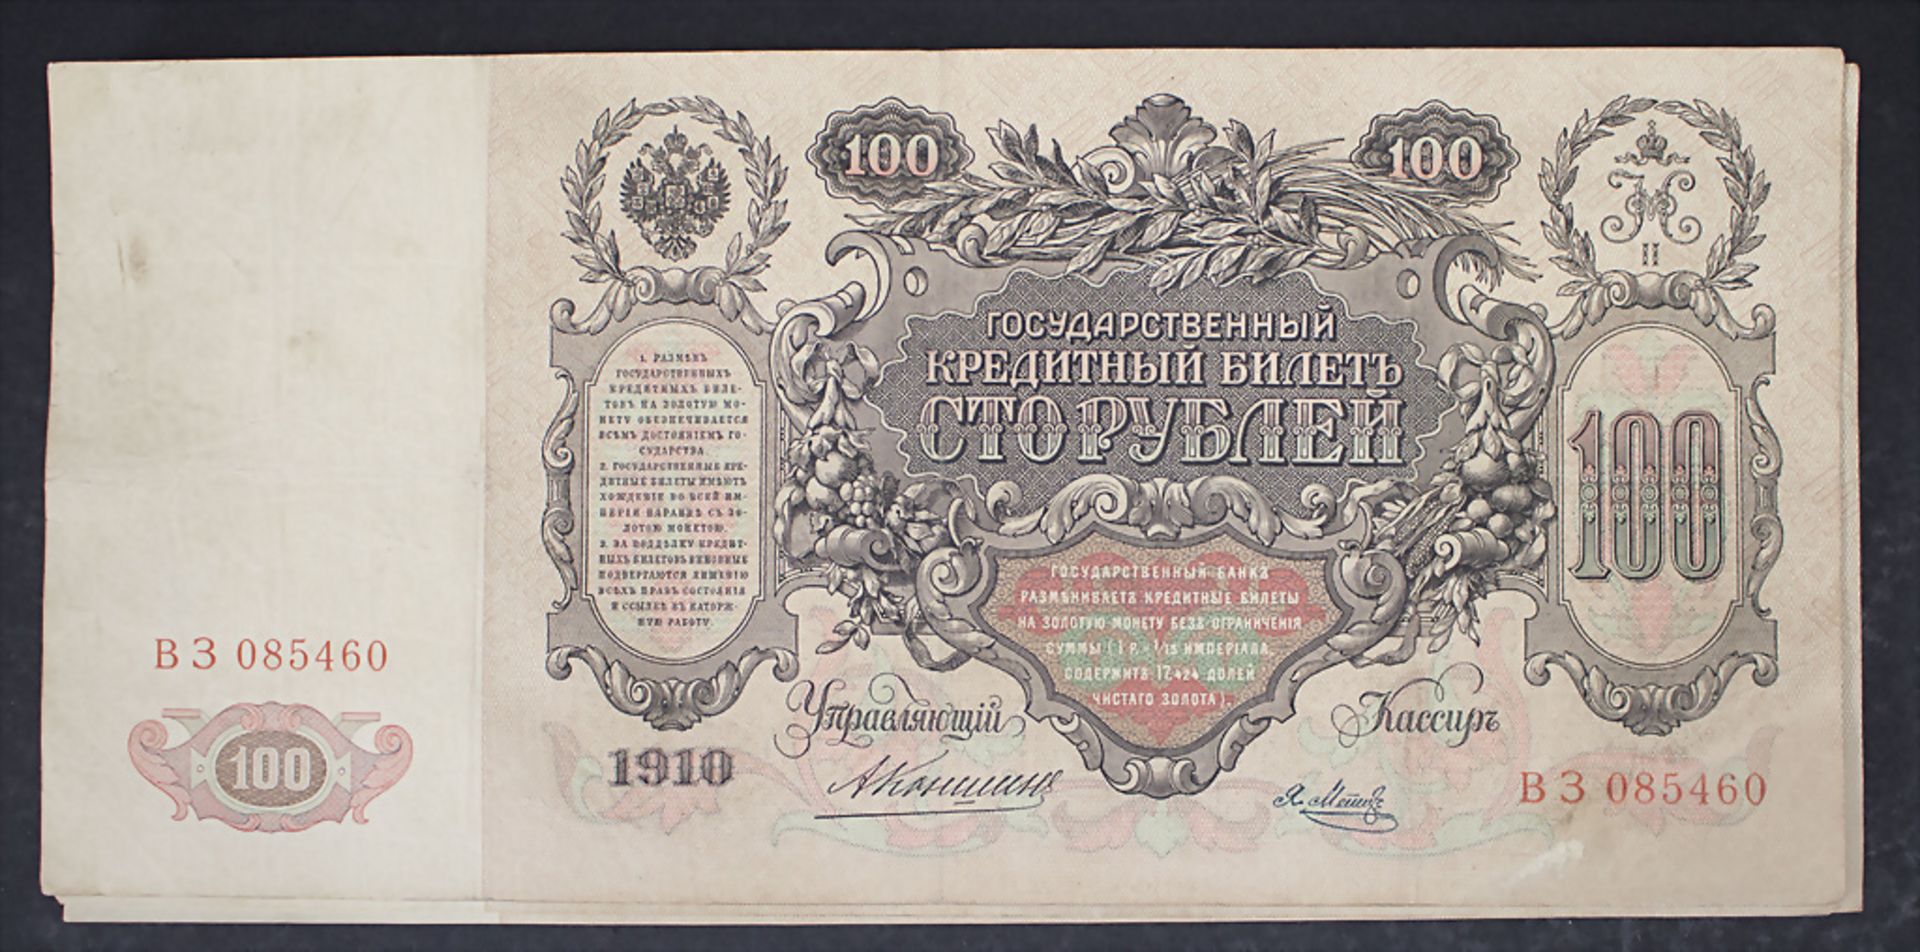 Sammlung Banknoten / A collection of banknotes - Bild 5 aus 5